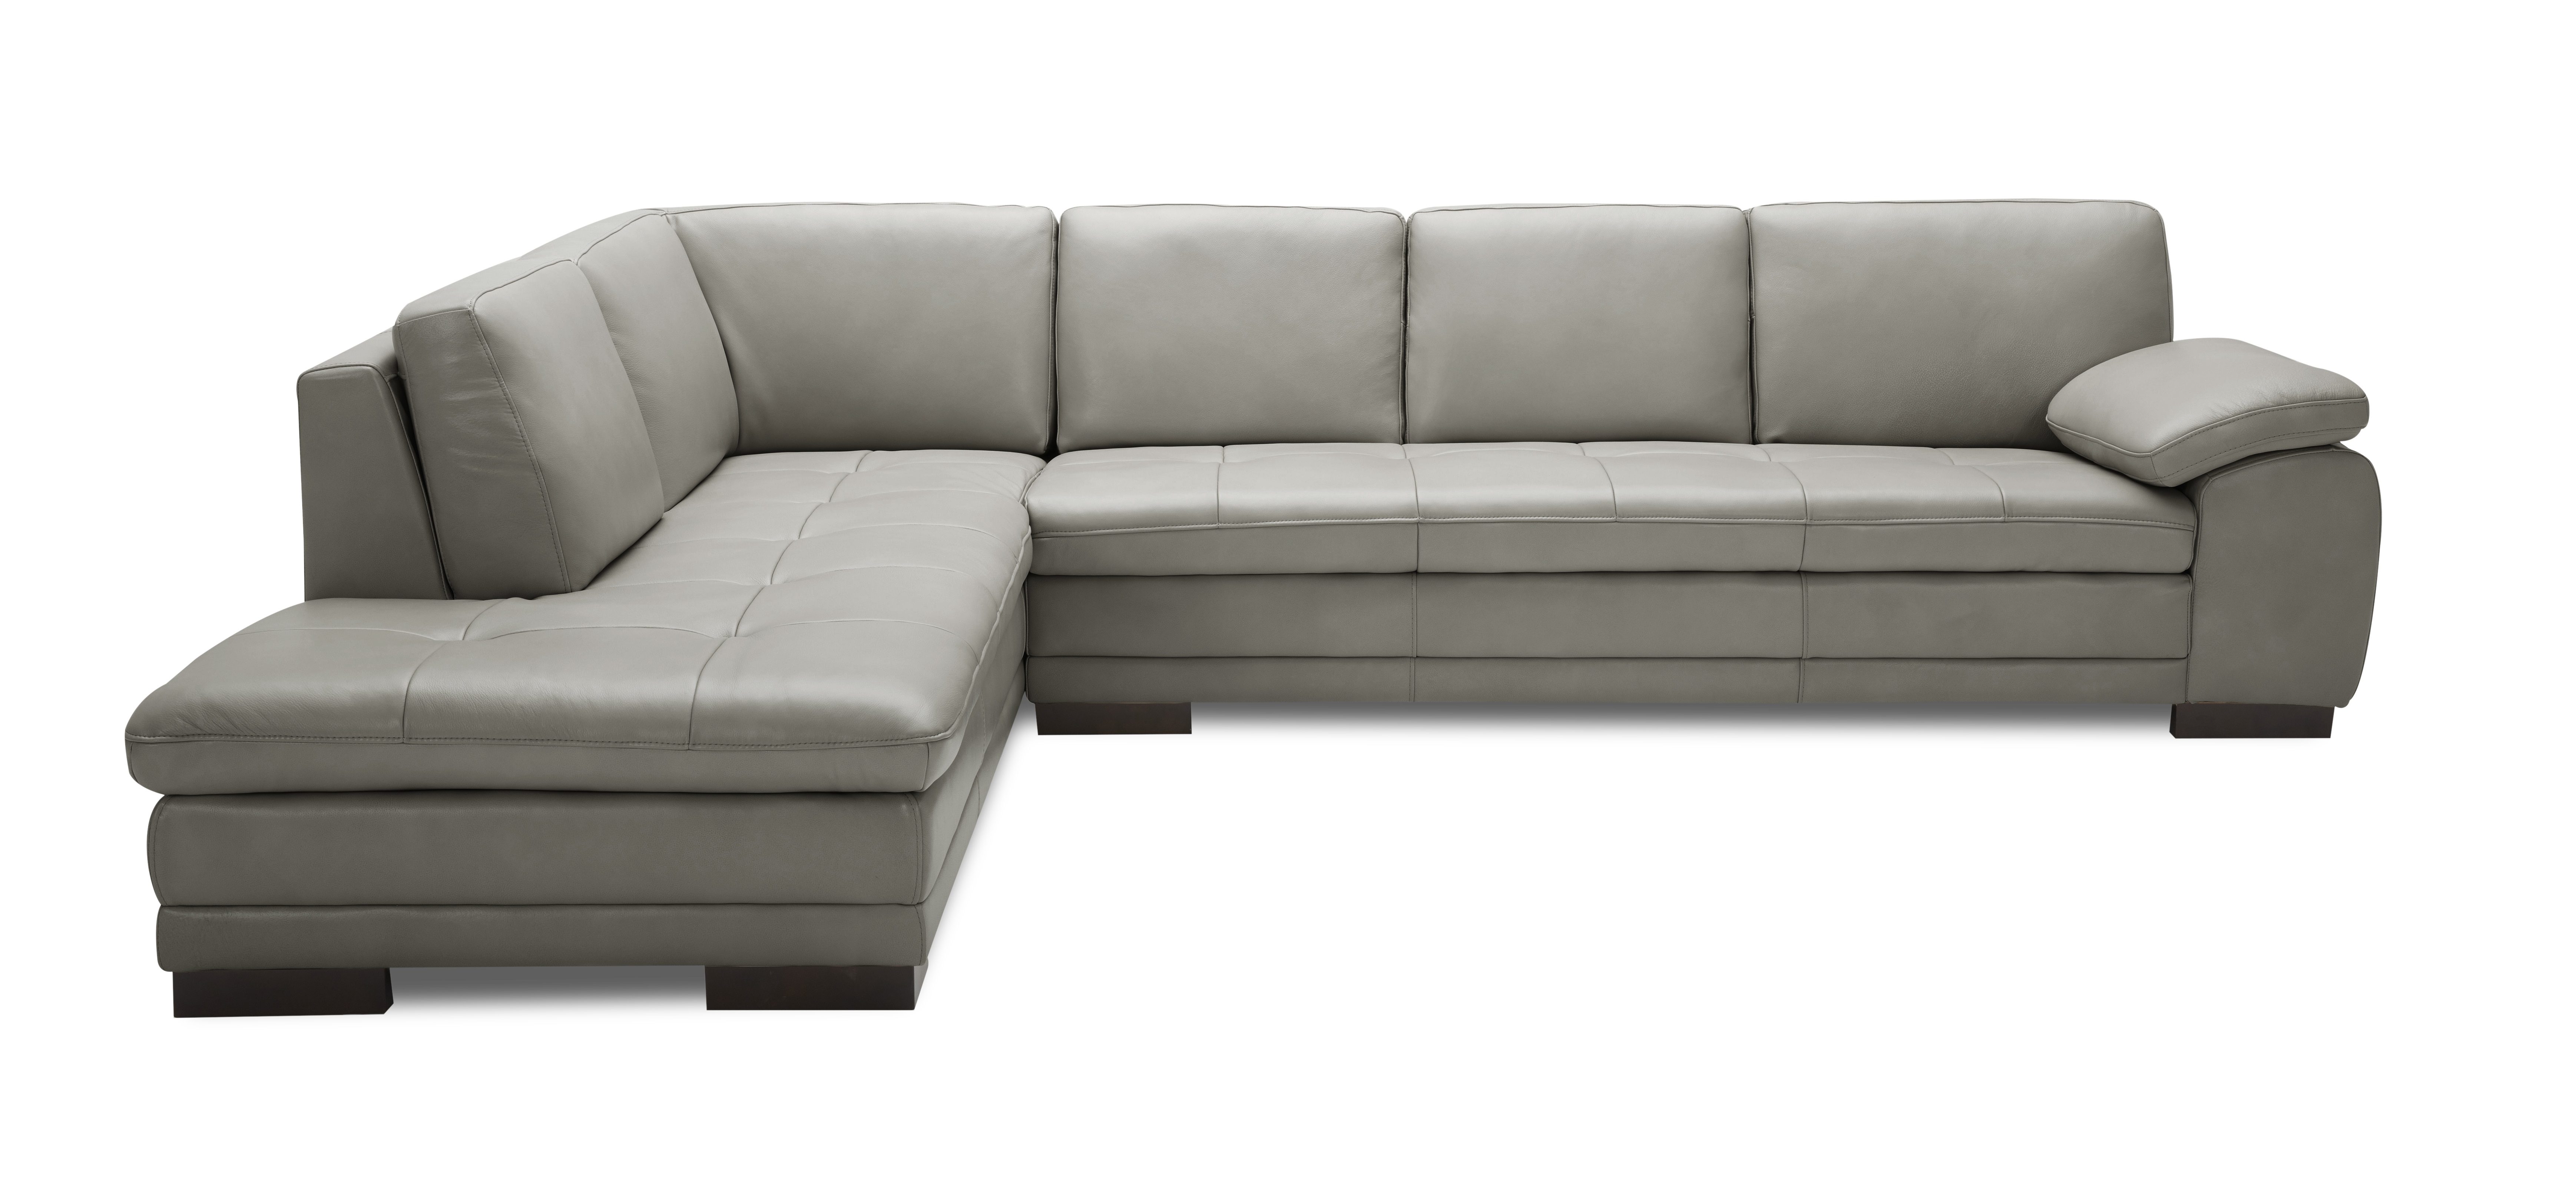 italian design franco leather sectional sofa